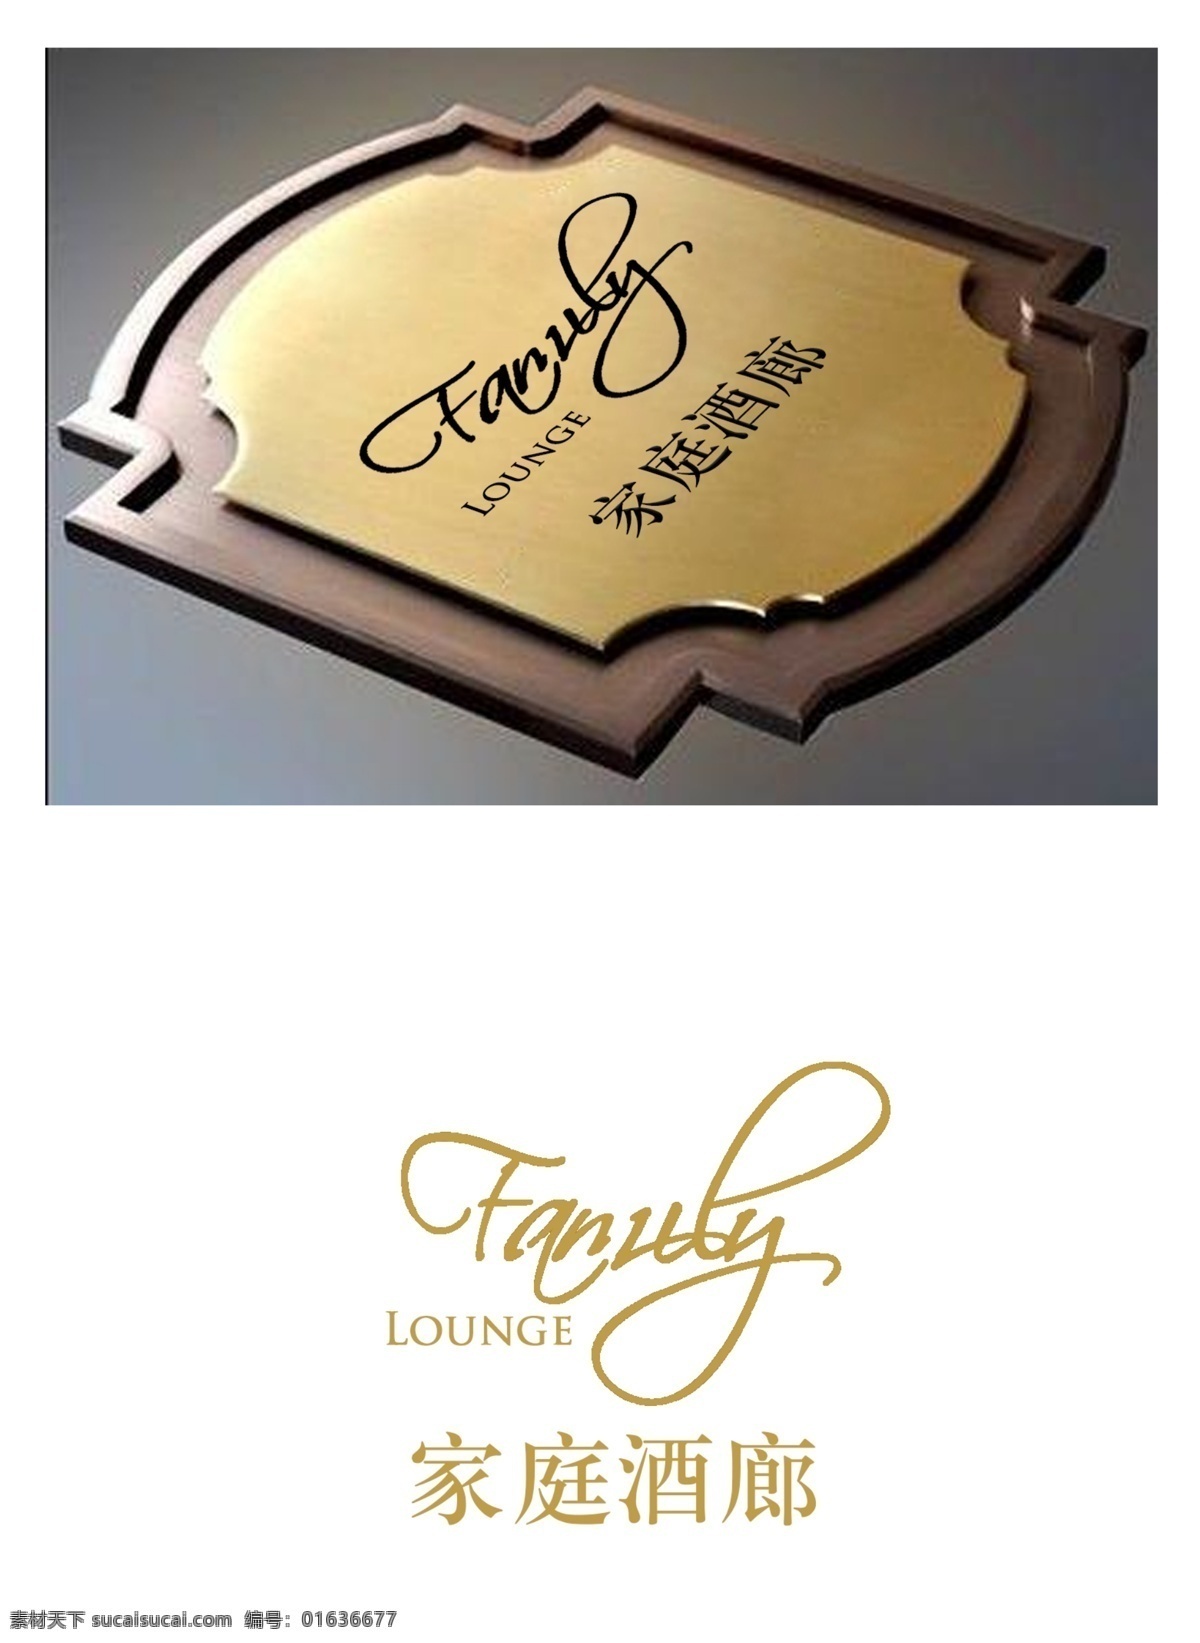 酒标 标志 家庭酒廊 logo 酒logo 酒吧标志